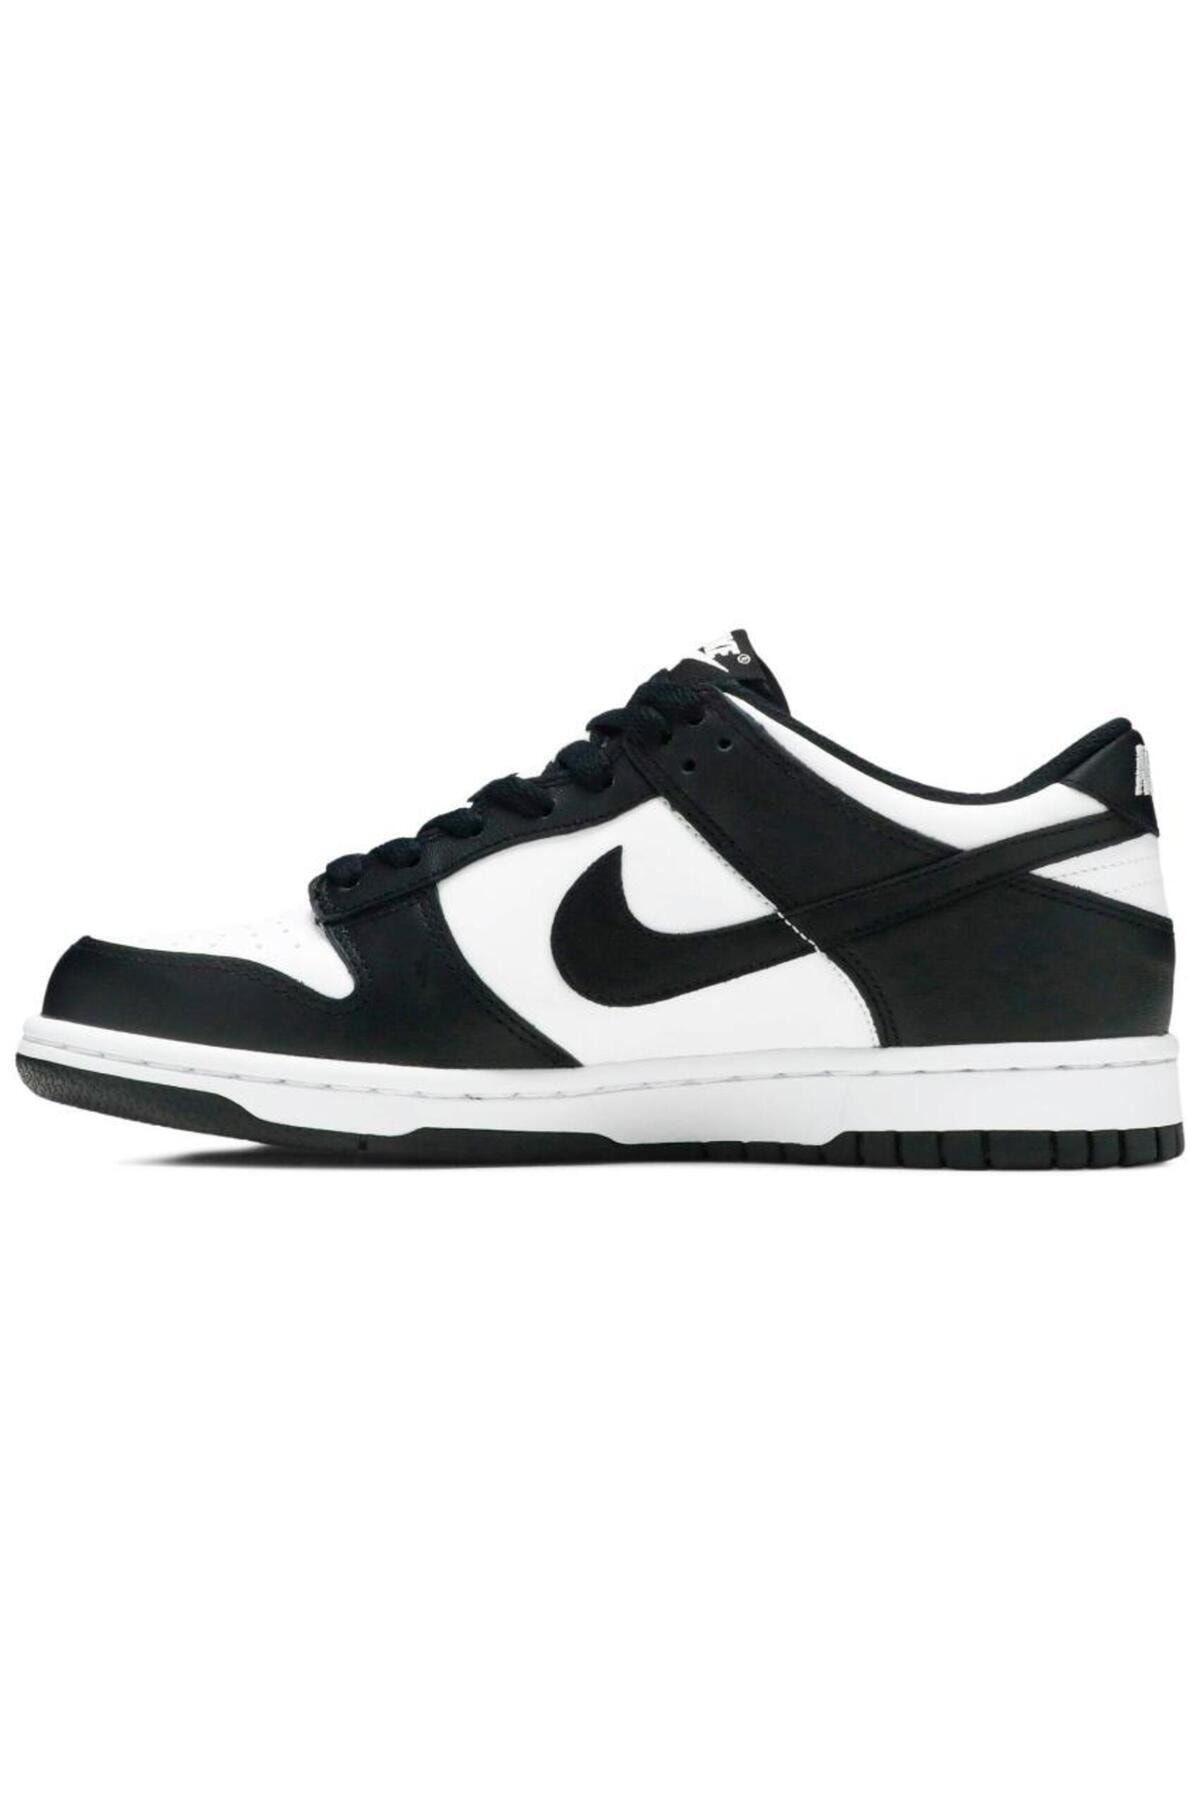 Nike Dunk  Low Black White (GS)